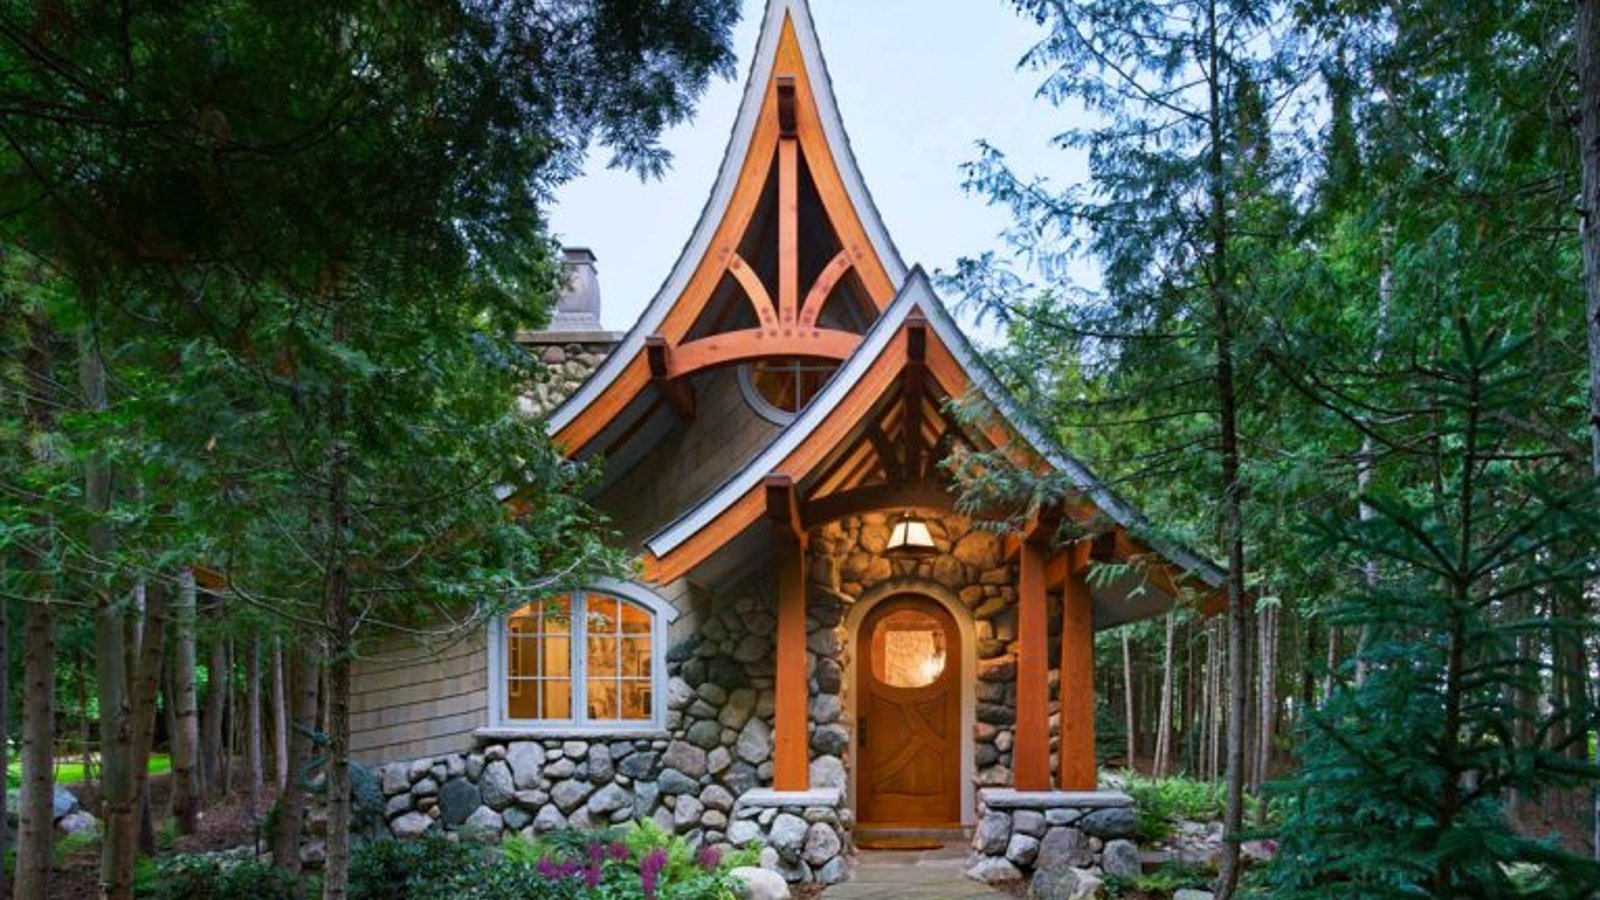 Cottage de rêve dont l'architecture fantaisiste est inspirée de contes de fées